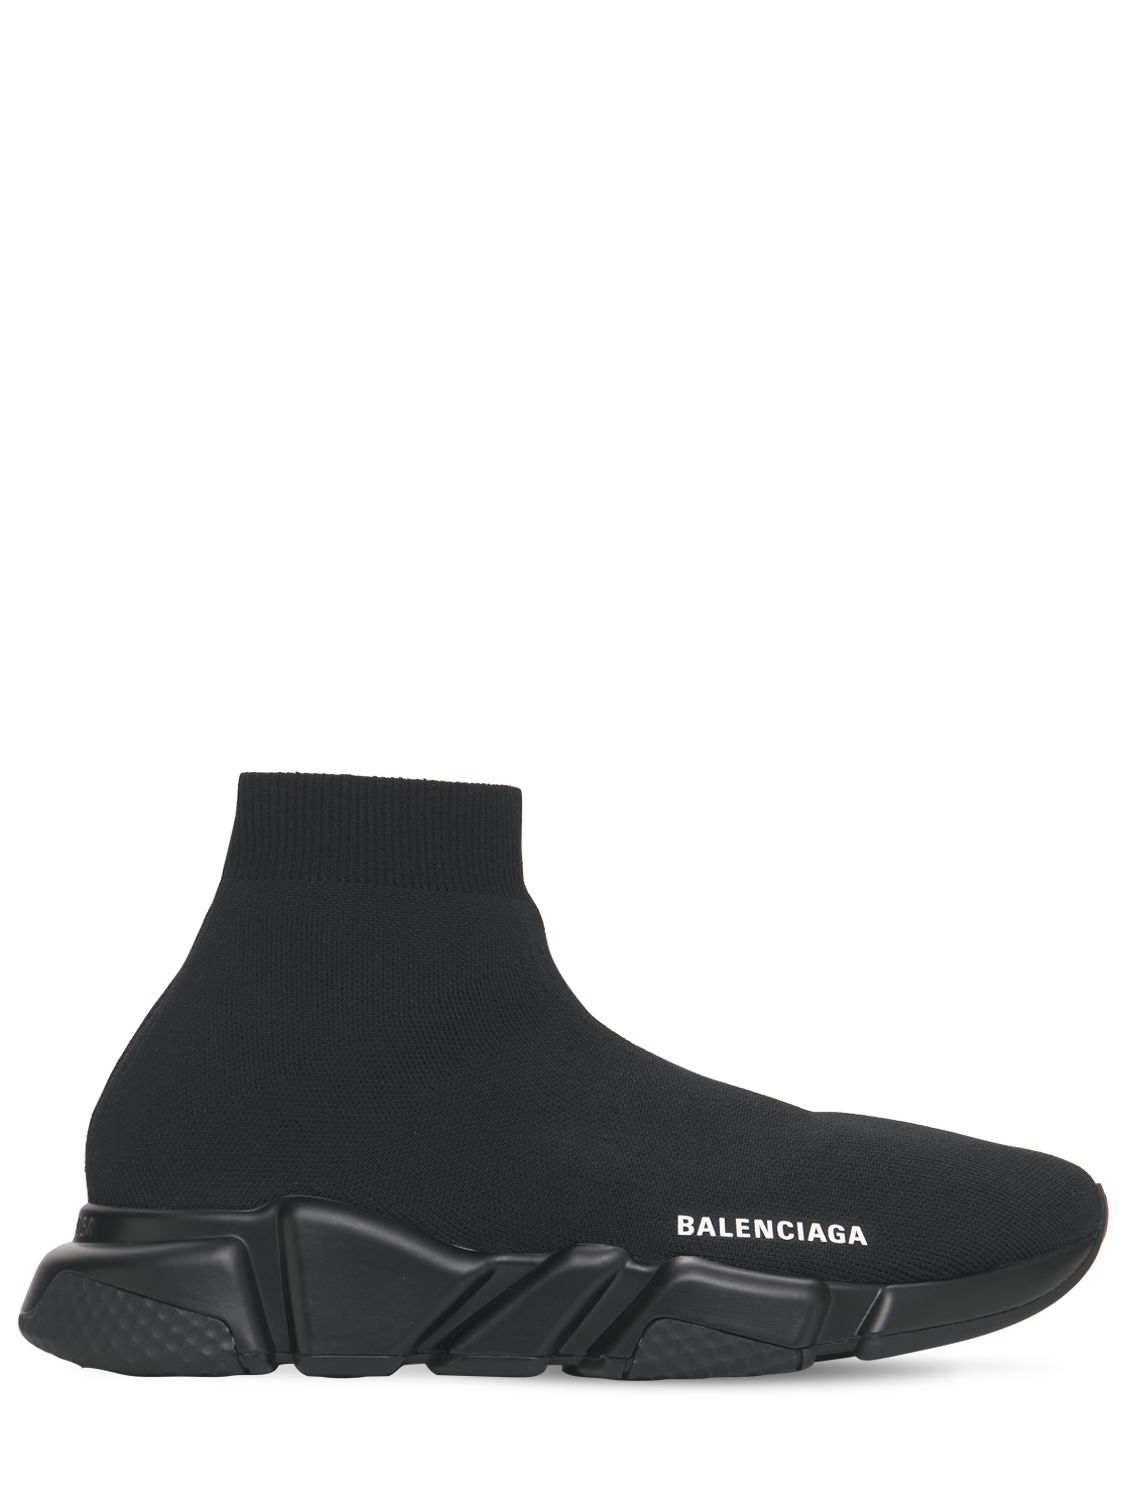 Mm Speed Recycled Knit Sneakers - BALENCIAGA - Modalova